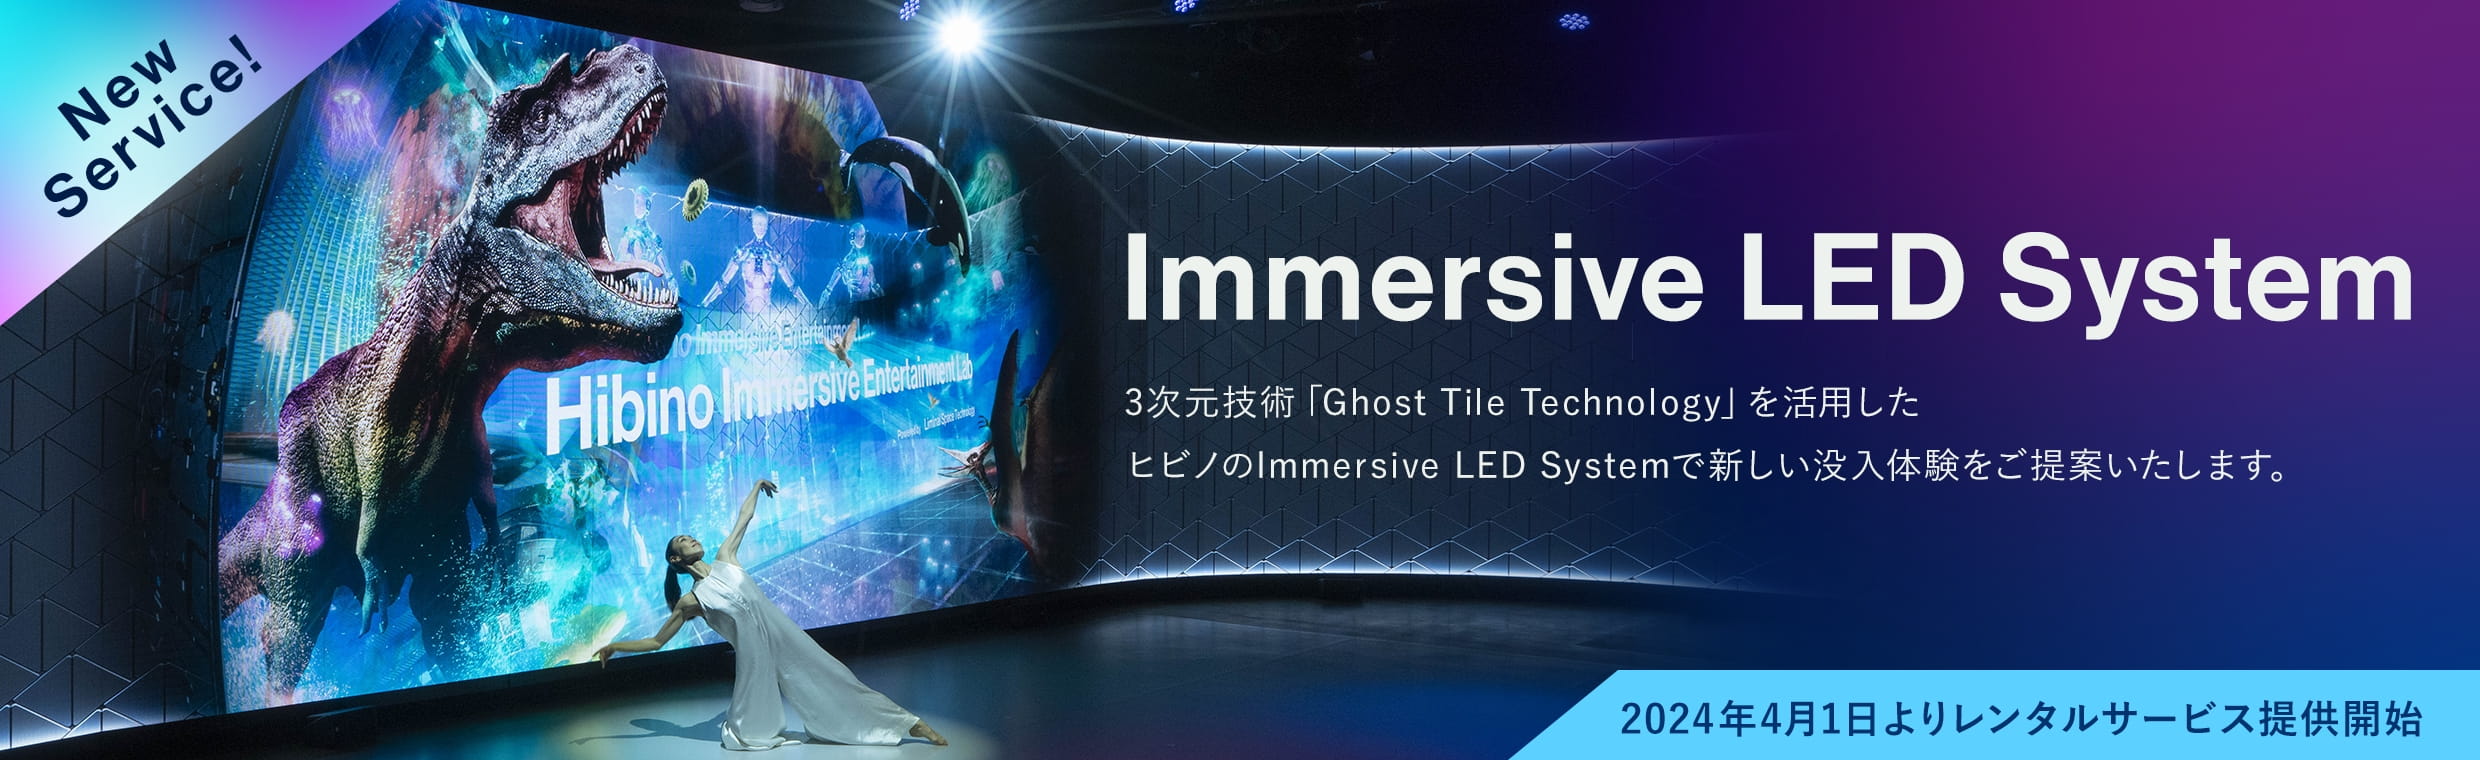 Immersive LED System 2024年3月中旬よりレンタルサービス提供開始